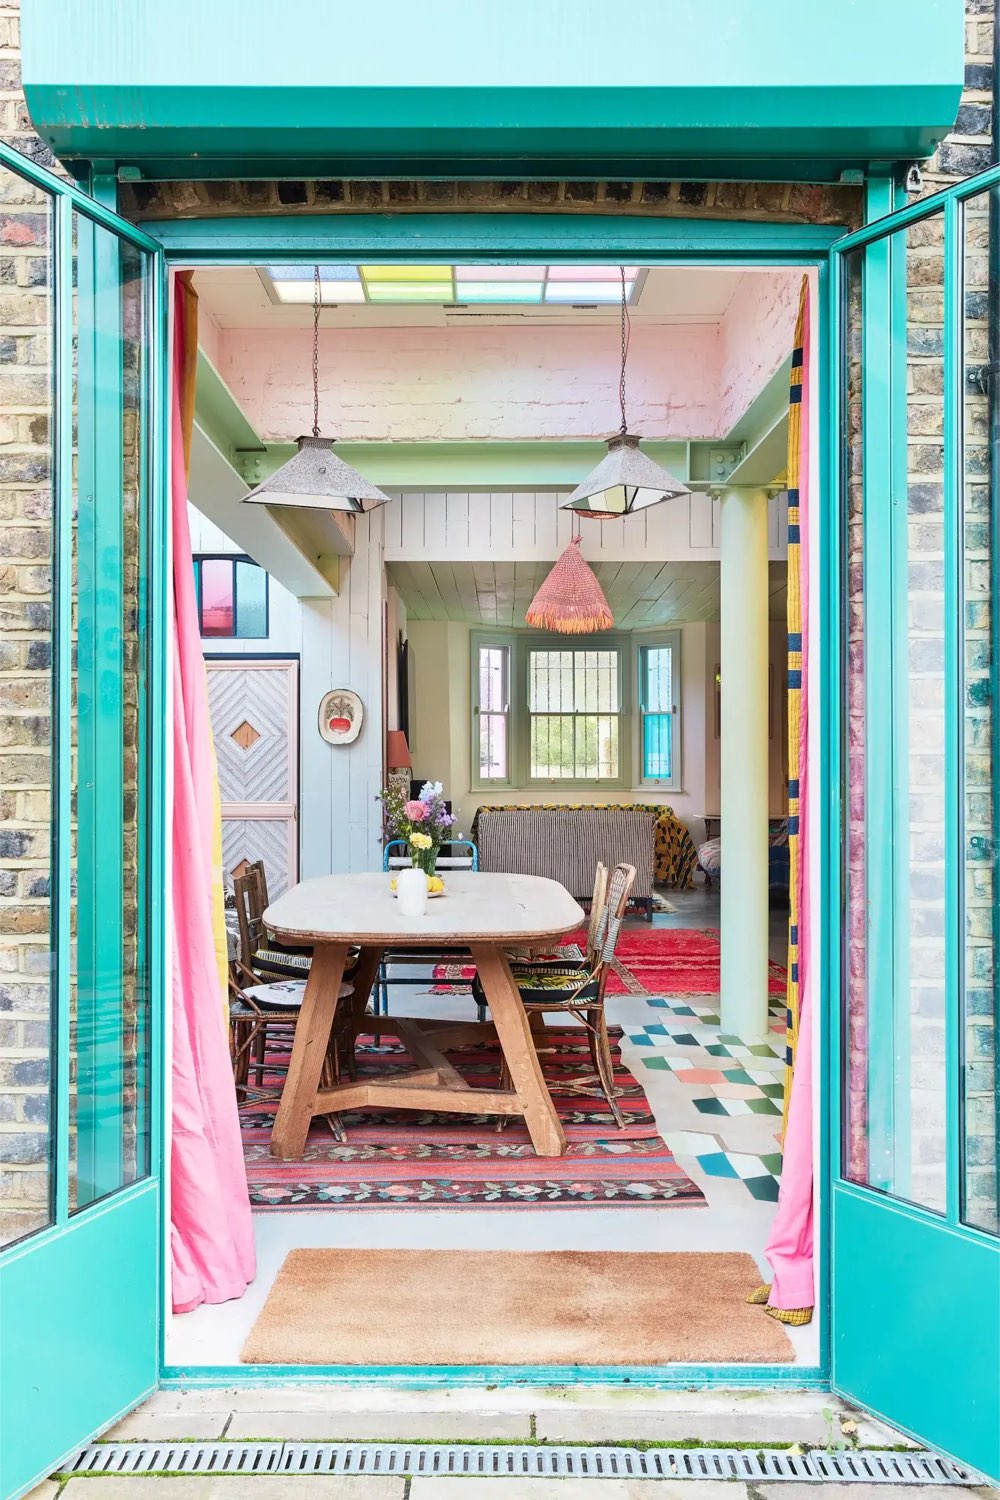 visite deco maison eclectique douce et pastel salle à manger baie vitrée menuiserie bleu vert mobilier vintage